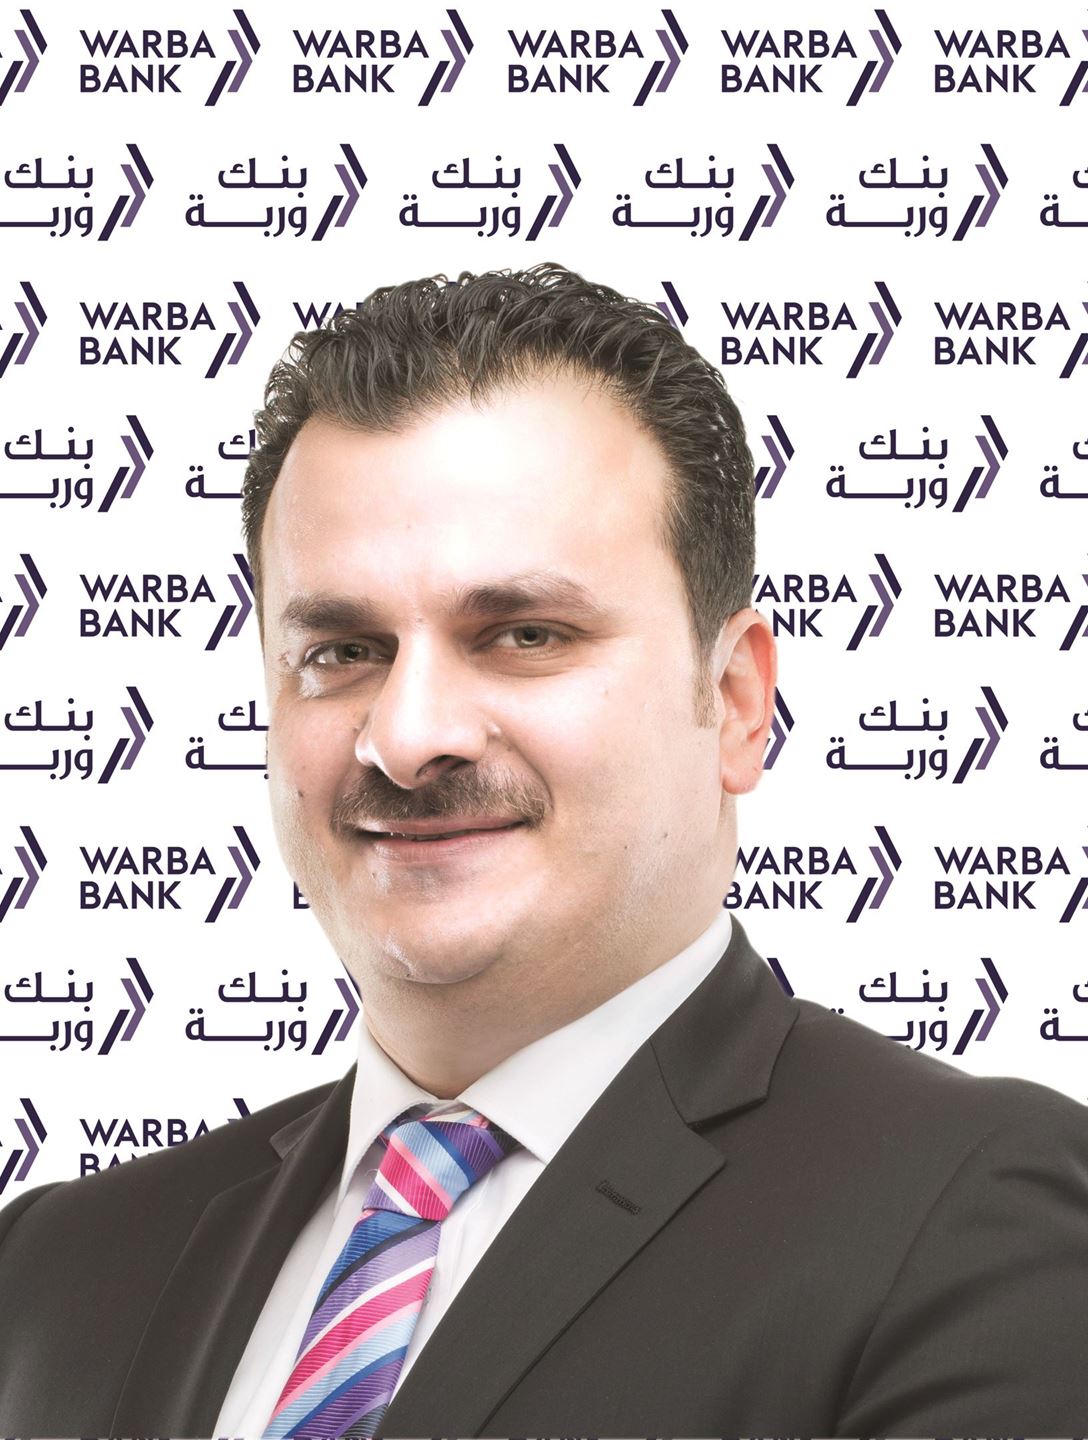 السيد محمد عاطف الشريف رئيس المجموعة الاستراتيجية والرقمية في بنك وربة